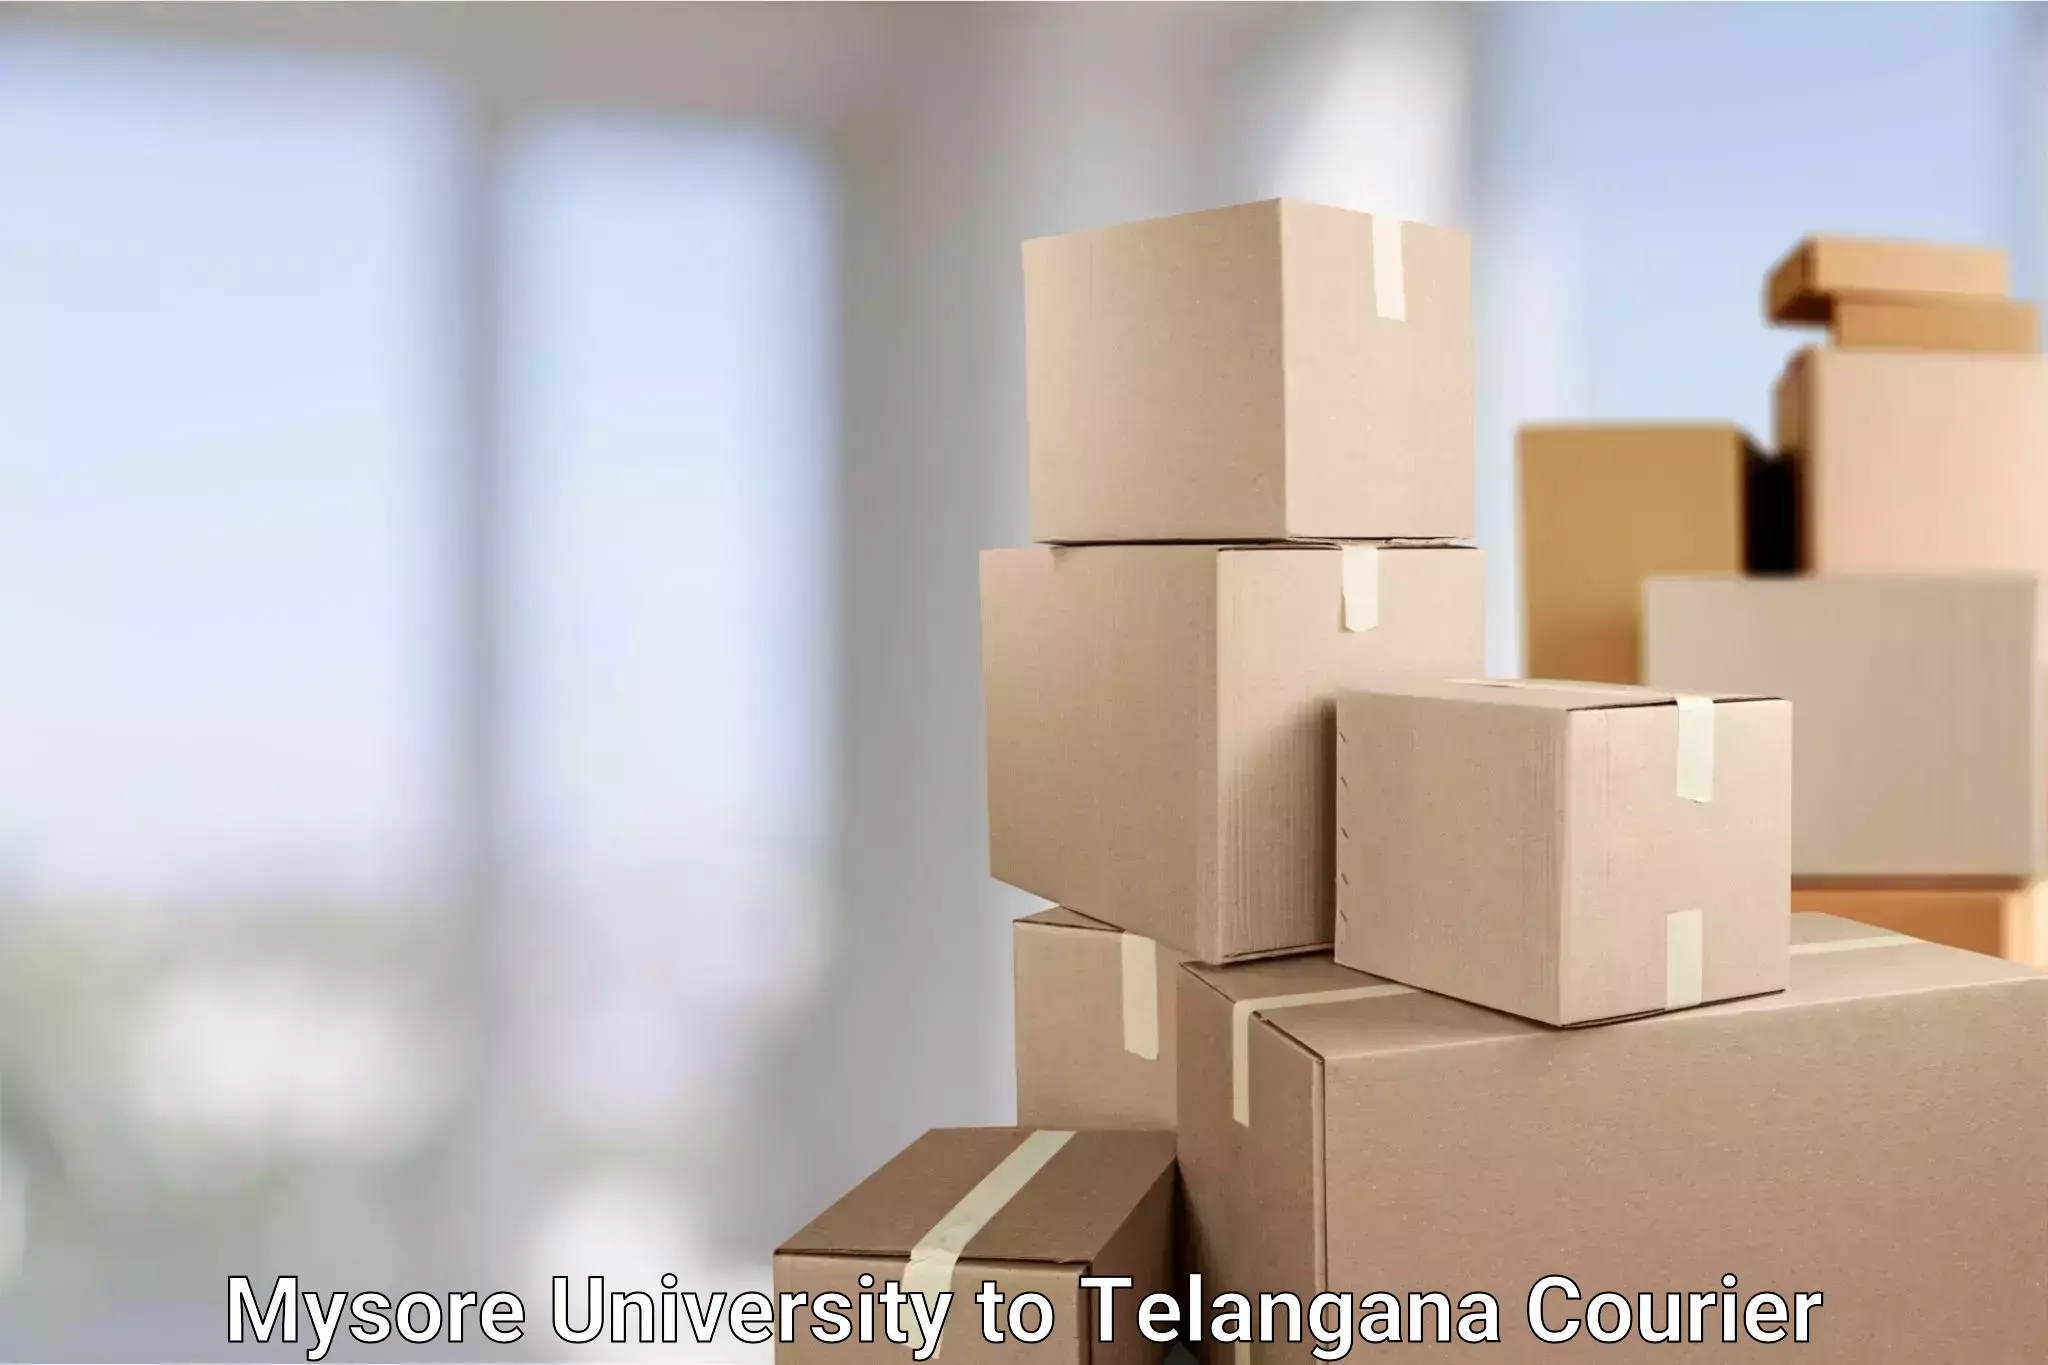 Large package courier Mysore University to Yerrupalem